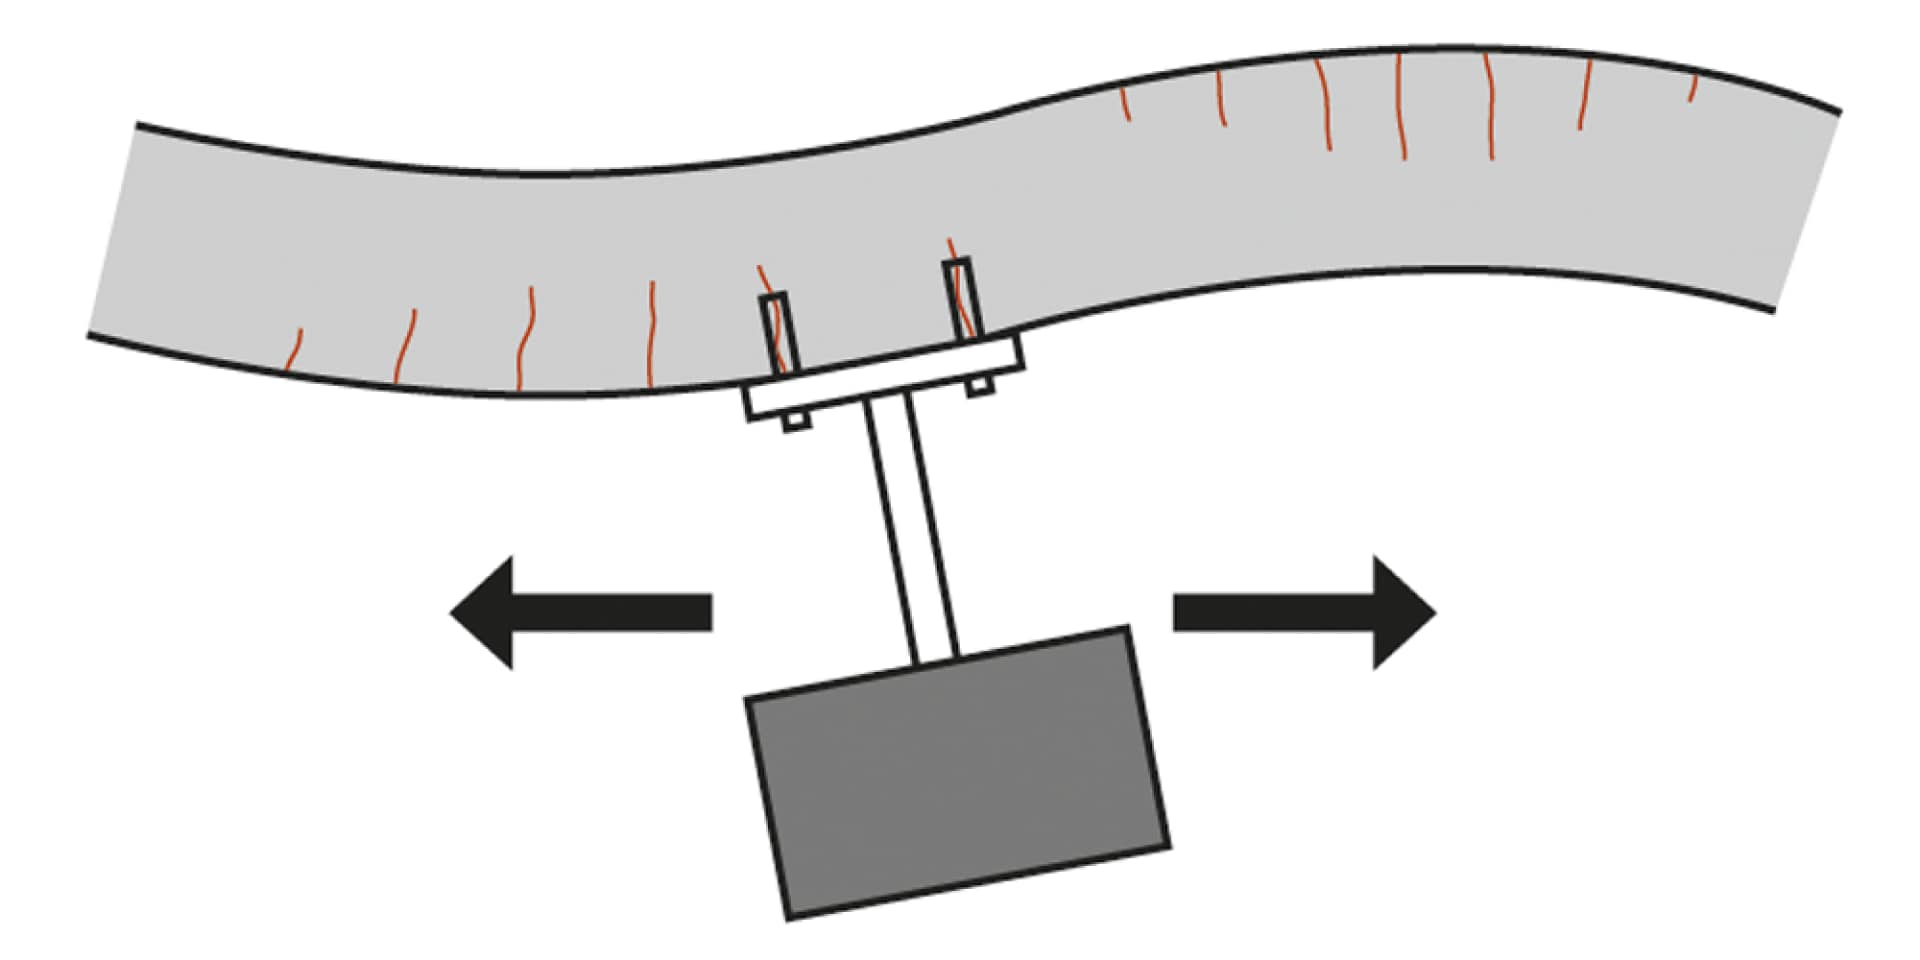 Cargas cíclicas en múltiples direcciones actuando sobre los anclajes a causa de un evento sísmico.